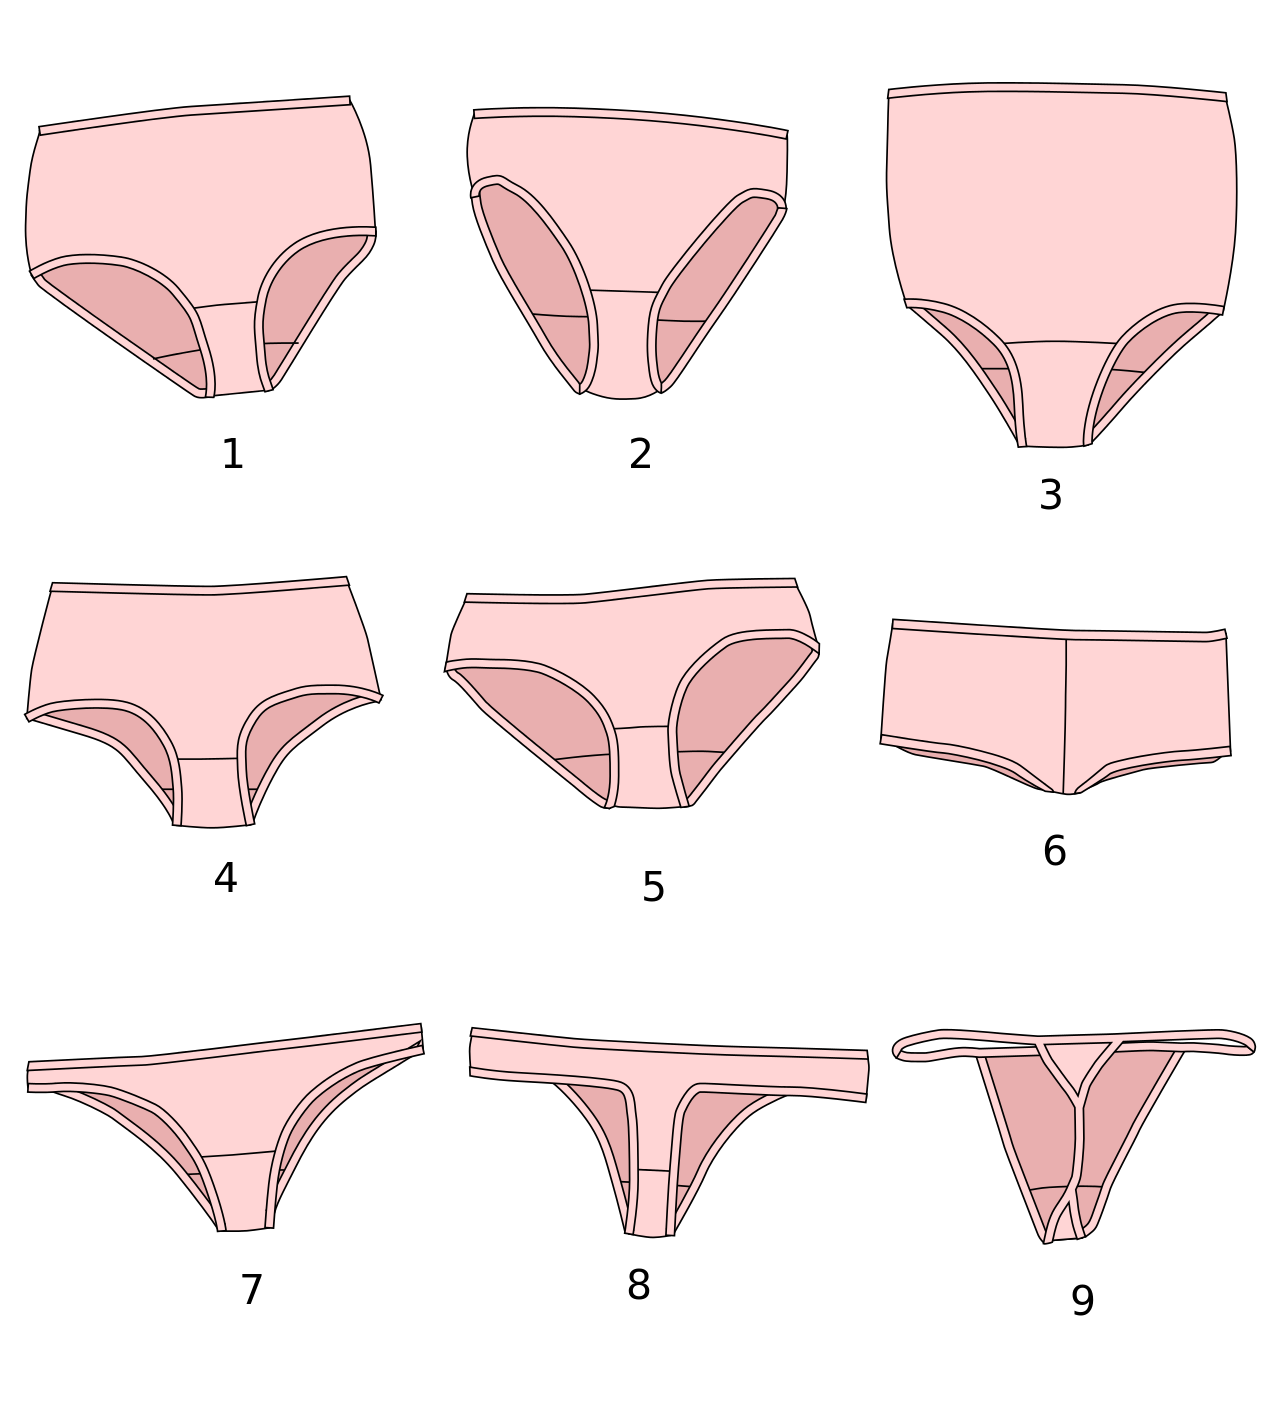 Tipos de vajina